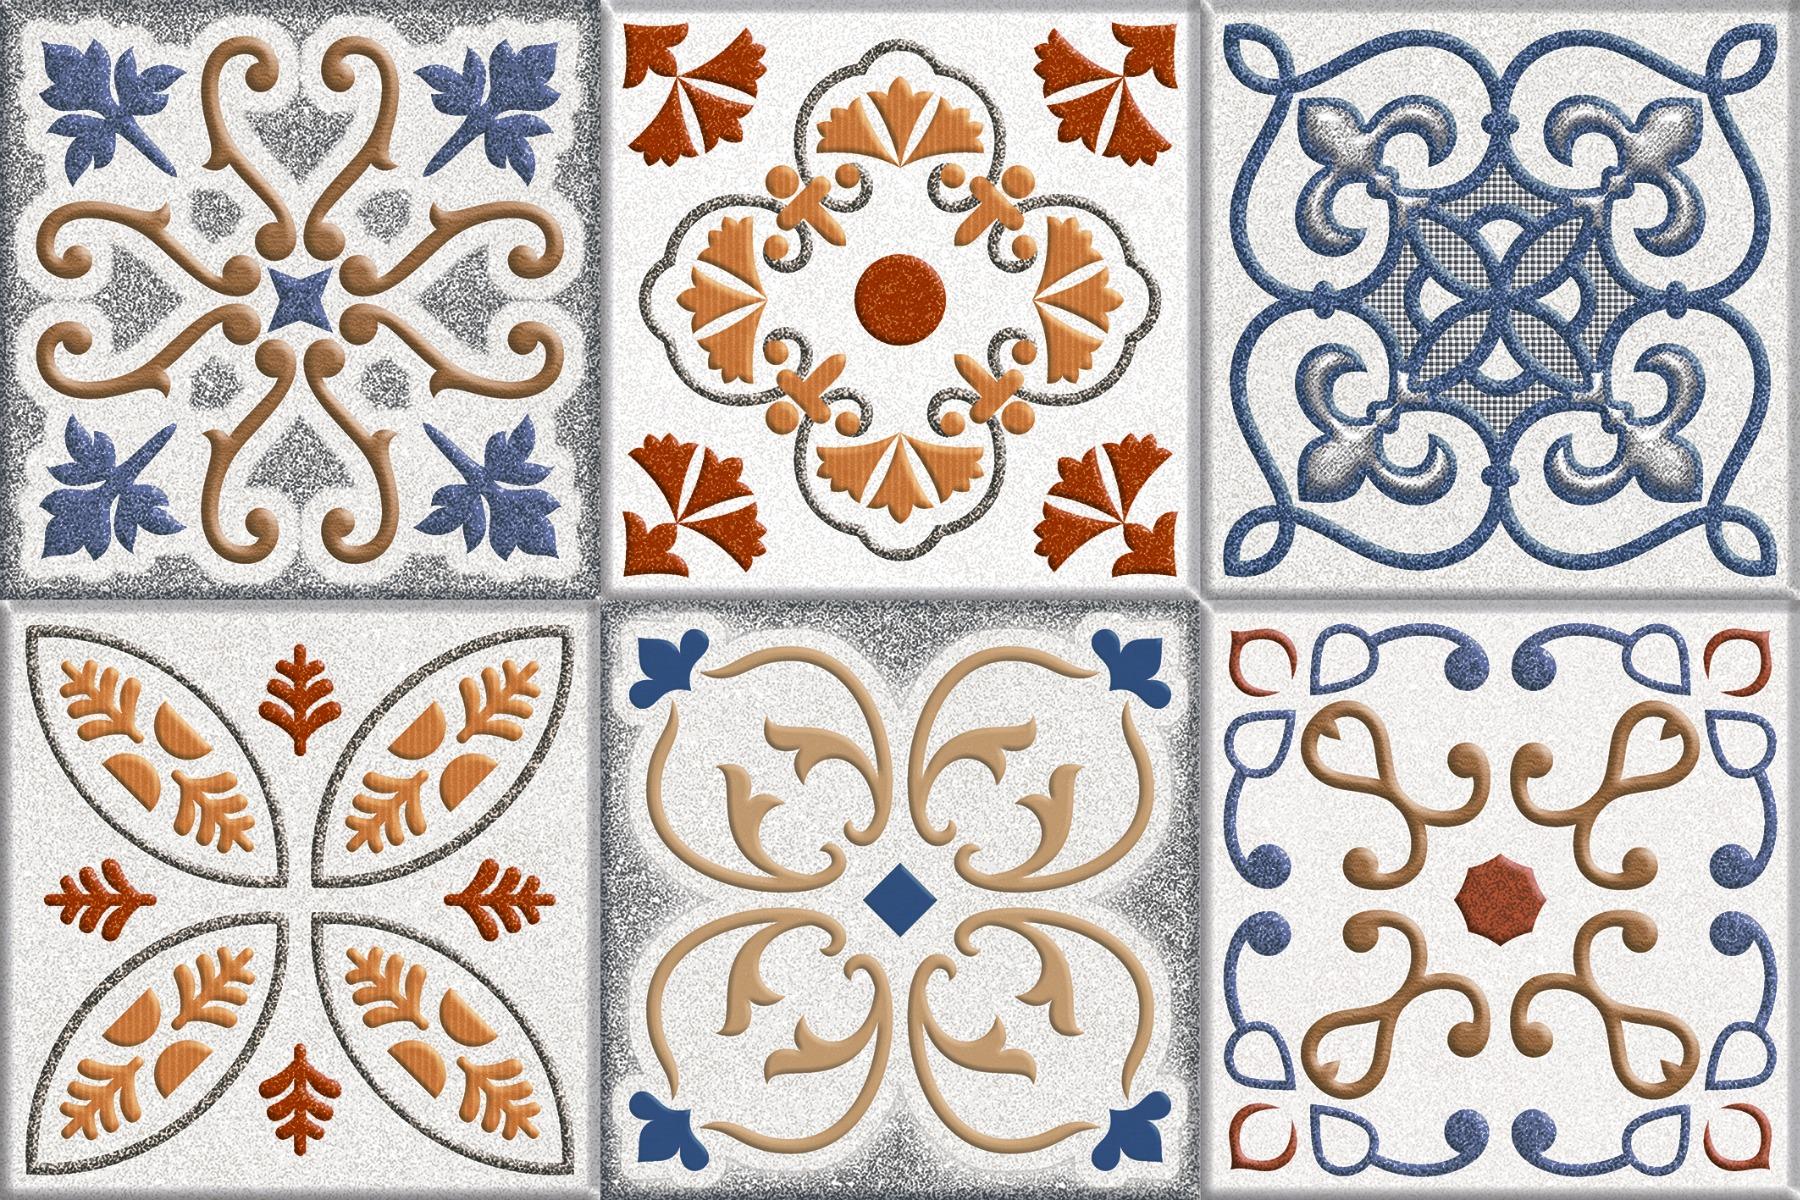 Blue Tiles for Bathroom Tiles, Living Room Tiles, Kitchen Tiles, Bedroom Tiles, Balcony Tiles